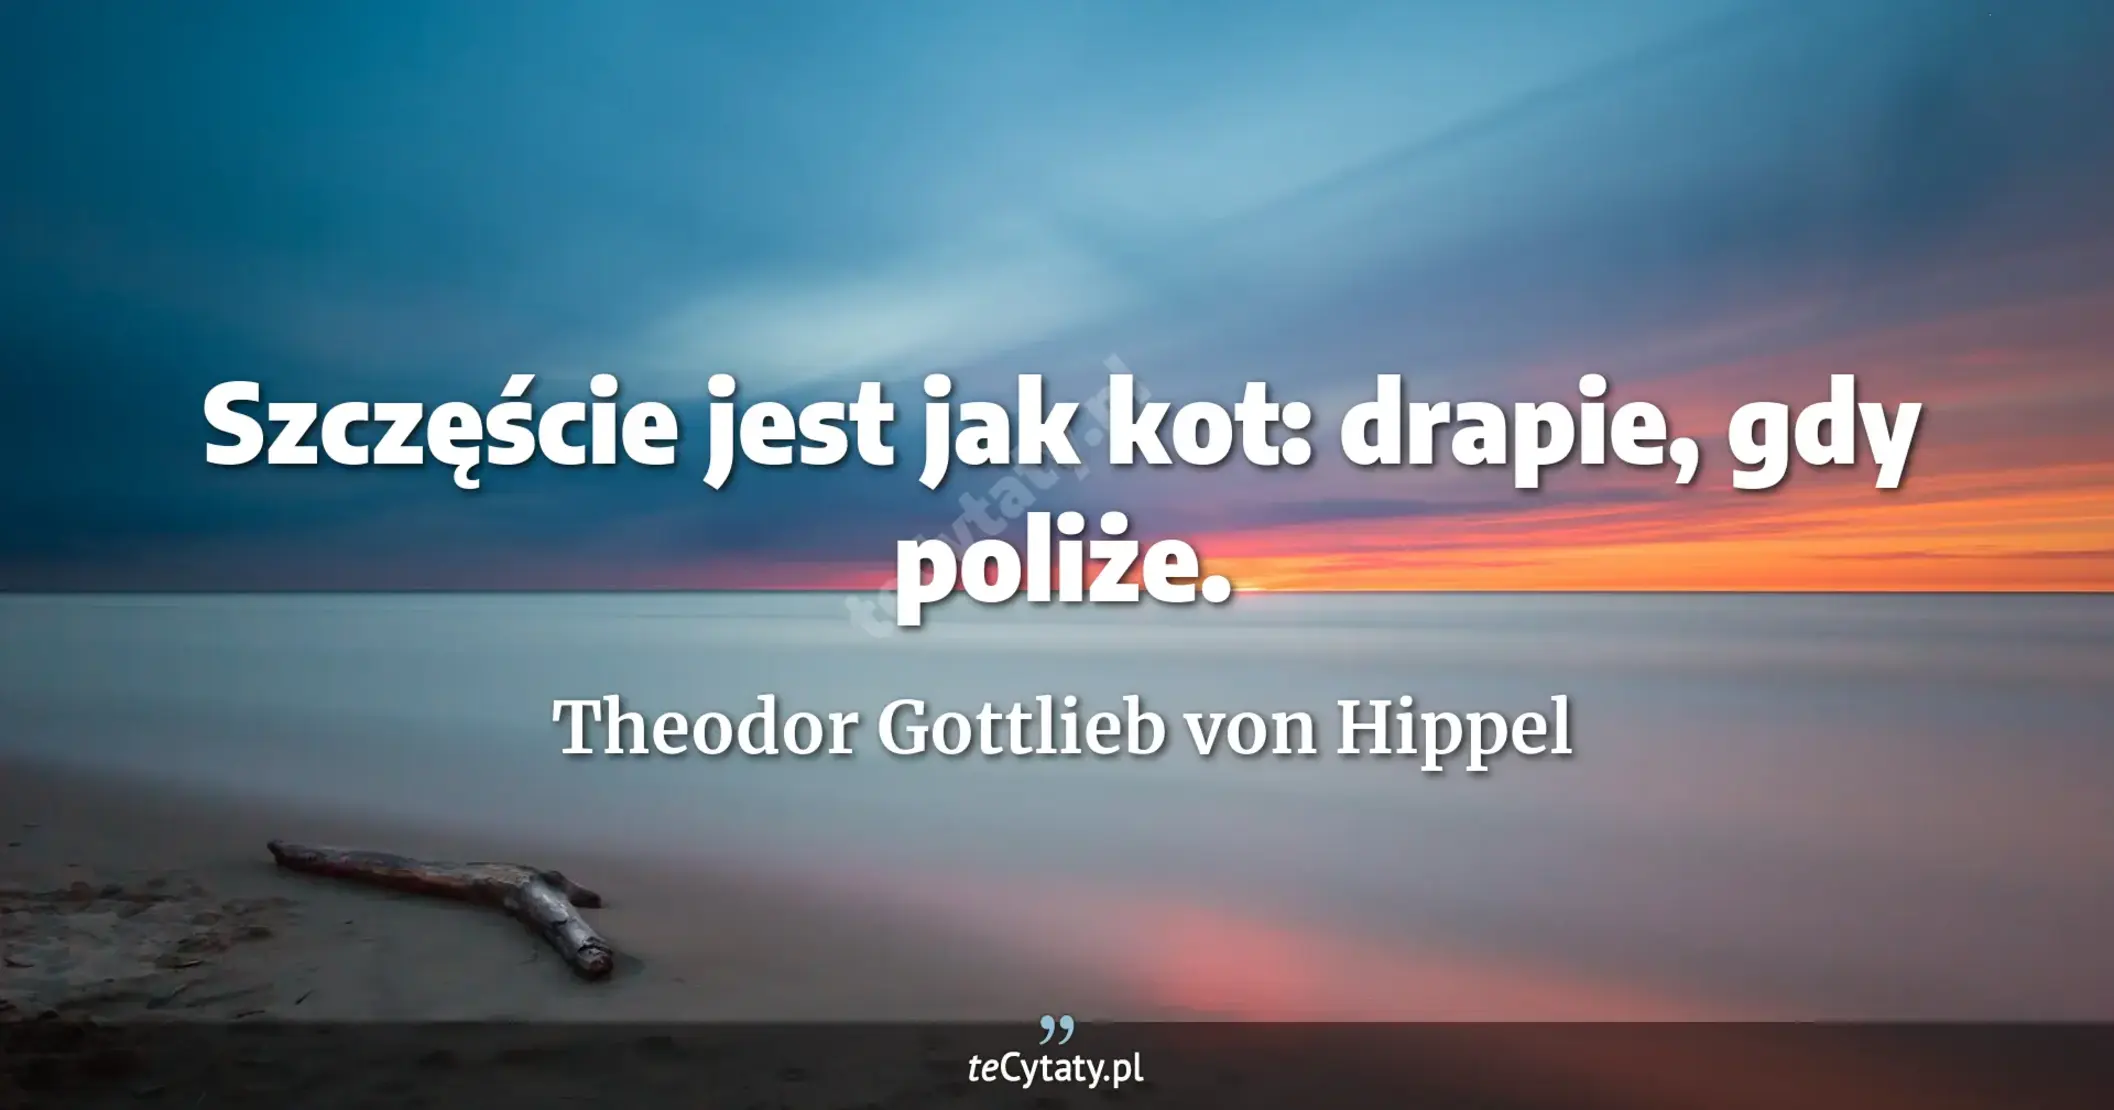 Szczęście jest jak kot: drapie, gdy poliże. - Theodor Gottlieb von Hippel